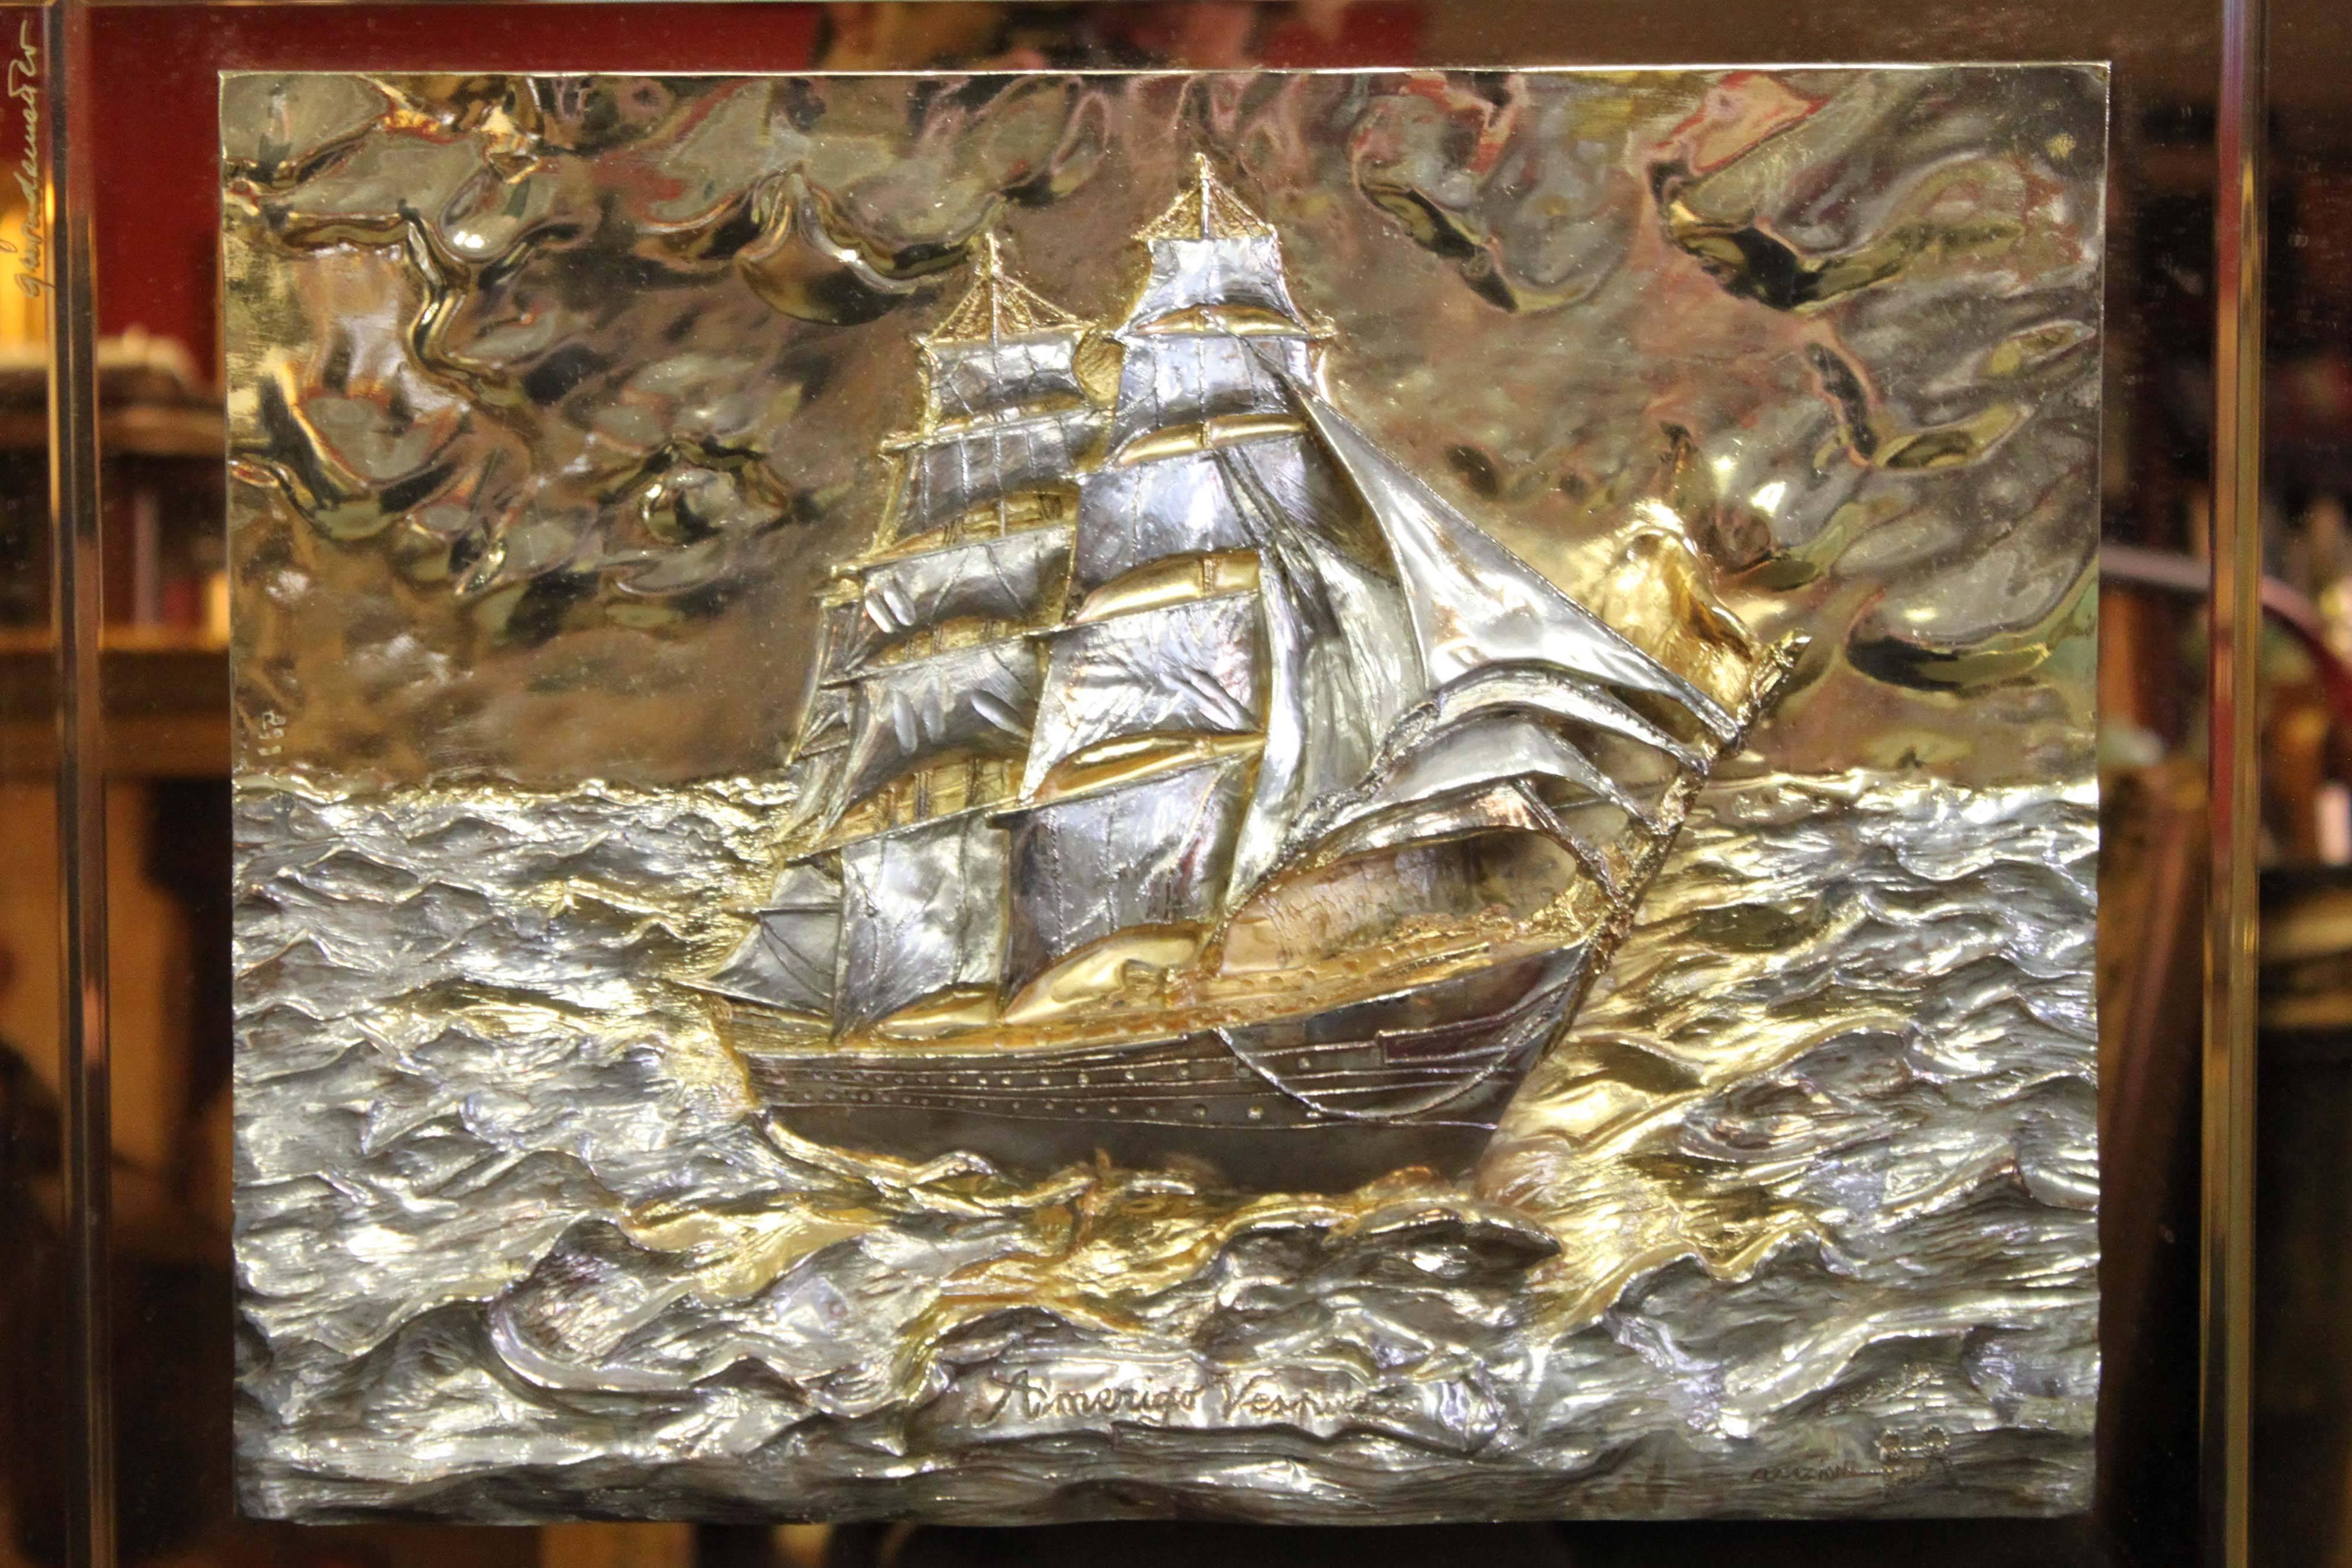 Gold ship wall plaque by Amerigo Vespucci, signed.